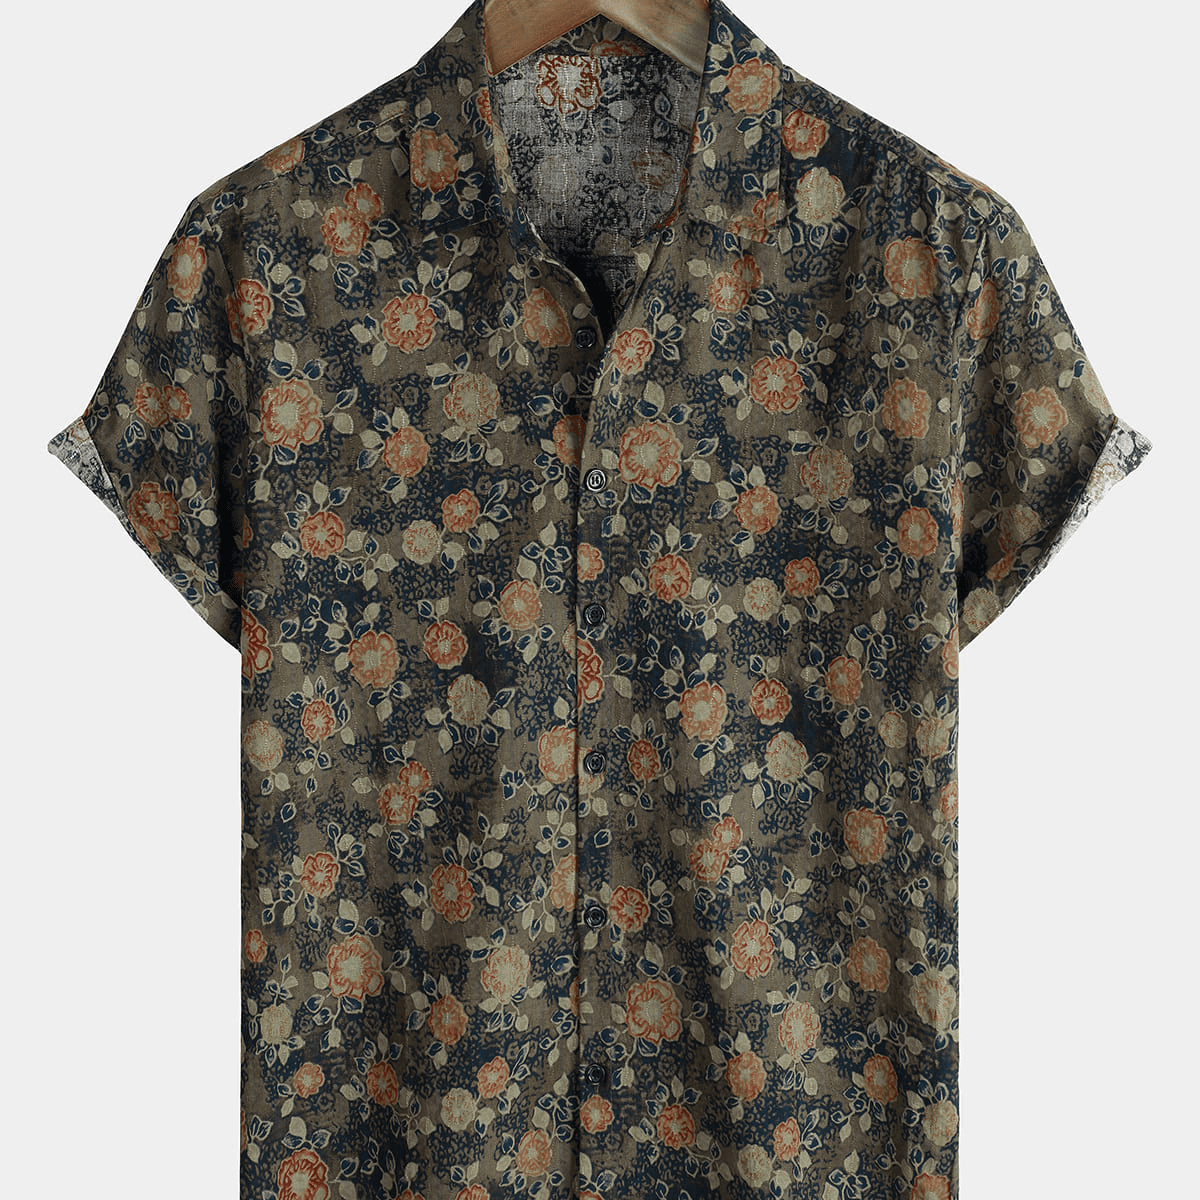 Men's Floral Jacquard Cotton Short Sleeve Button Up Shirt